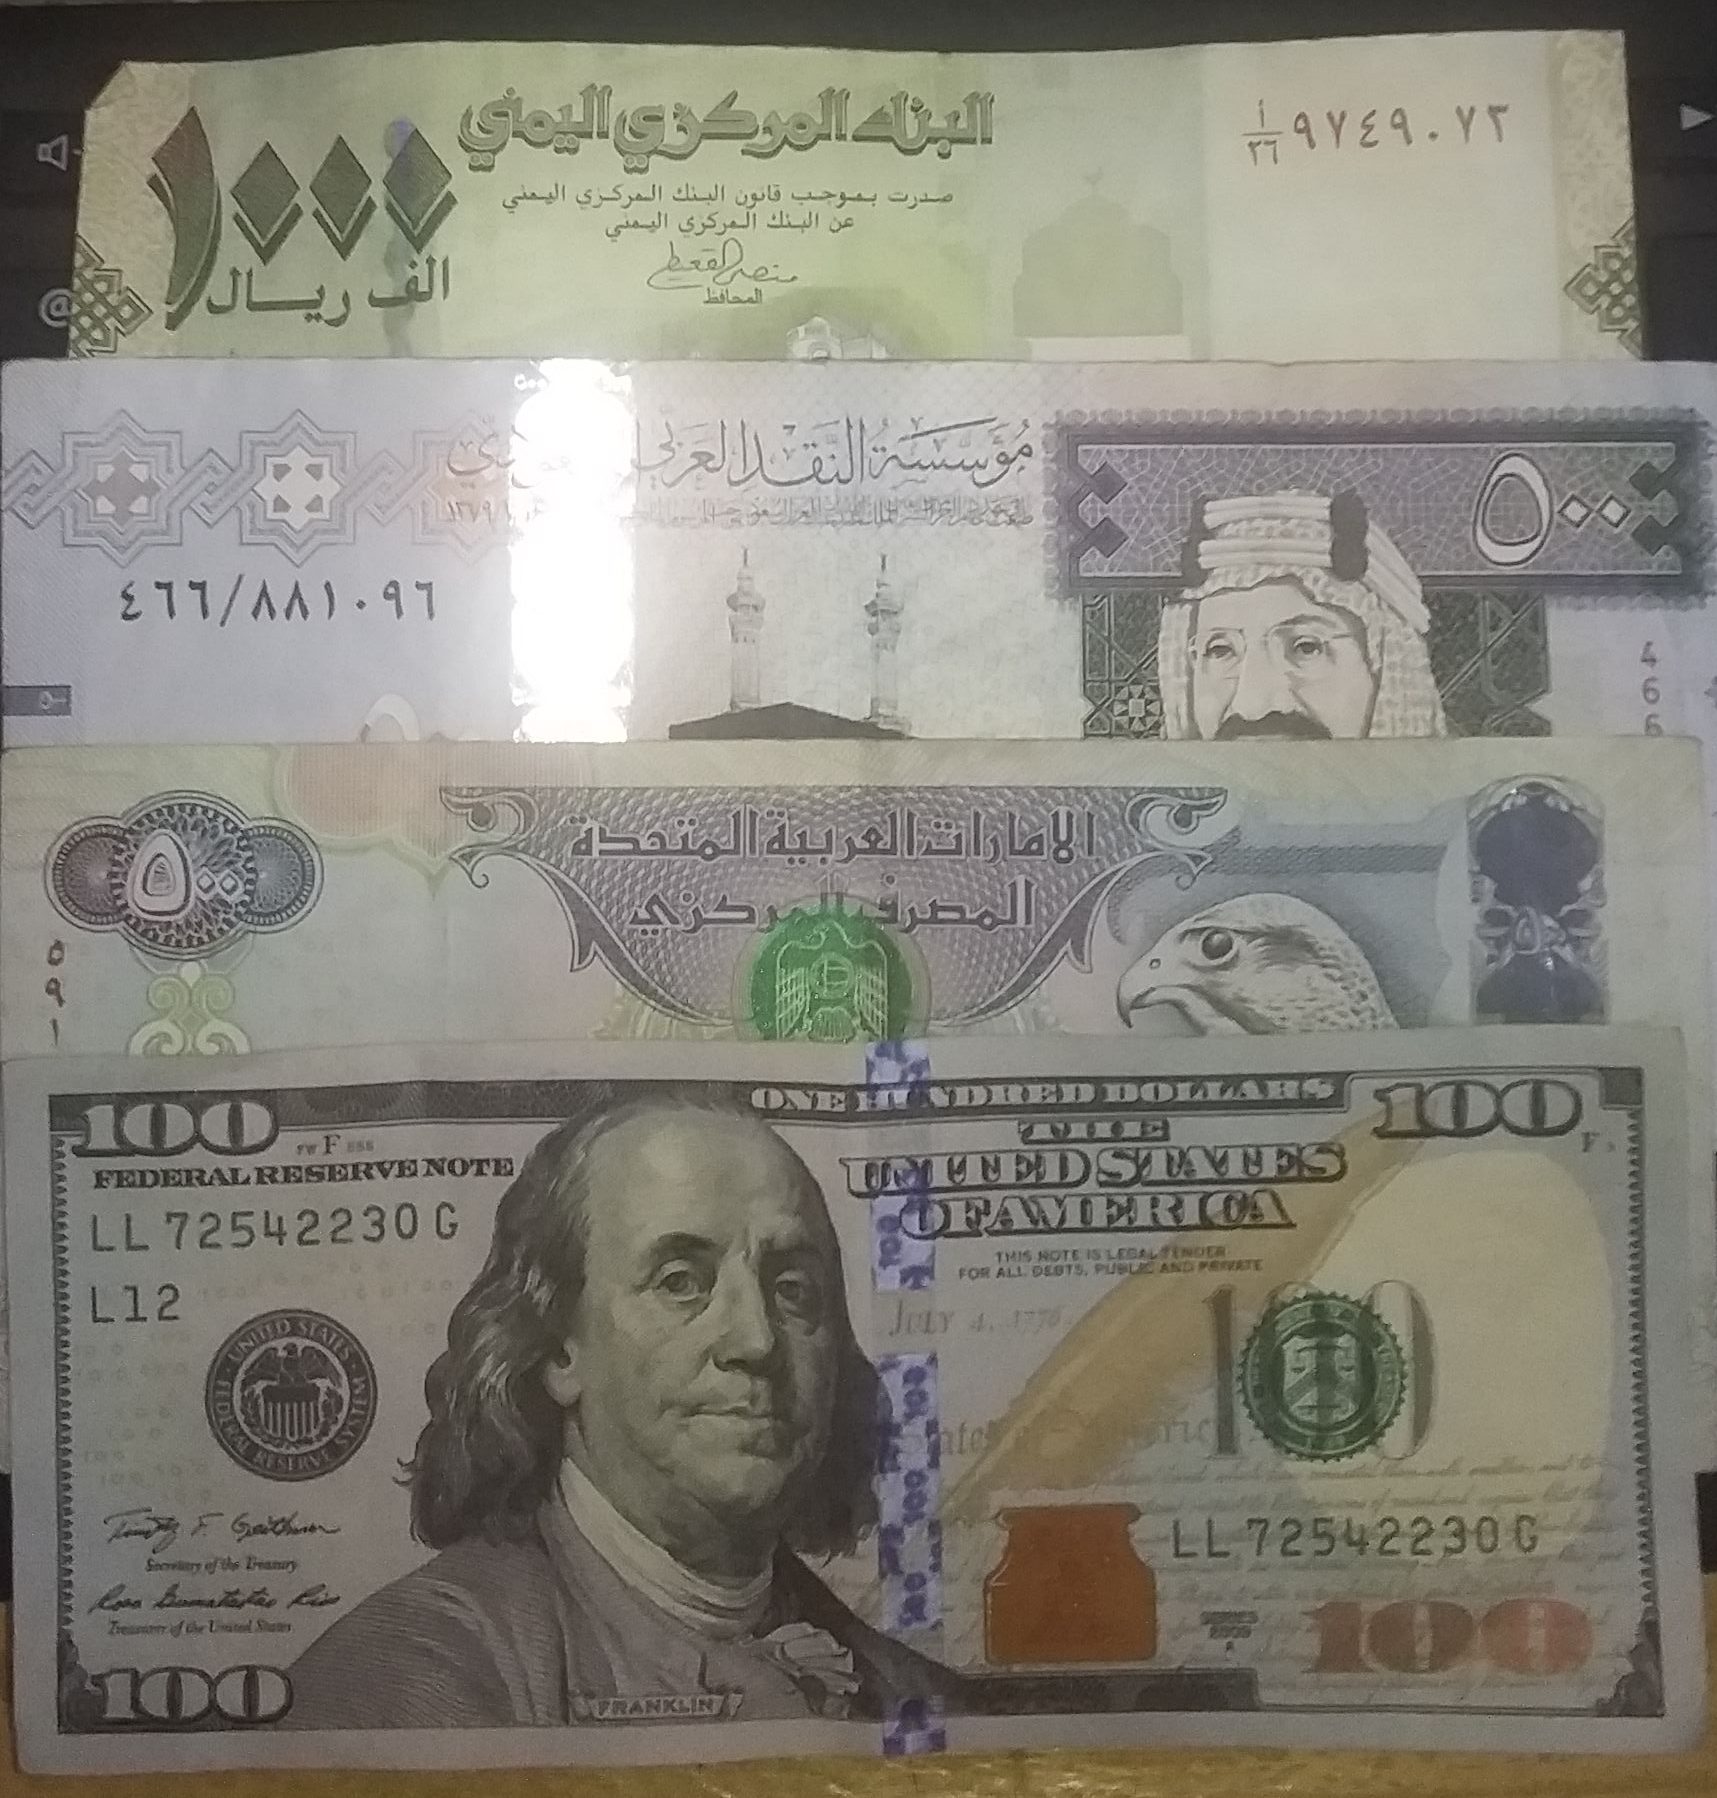 اسعار صرف العملات الاجنبية مقابل الريال اليمني ووردبريس Www